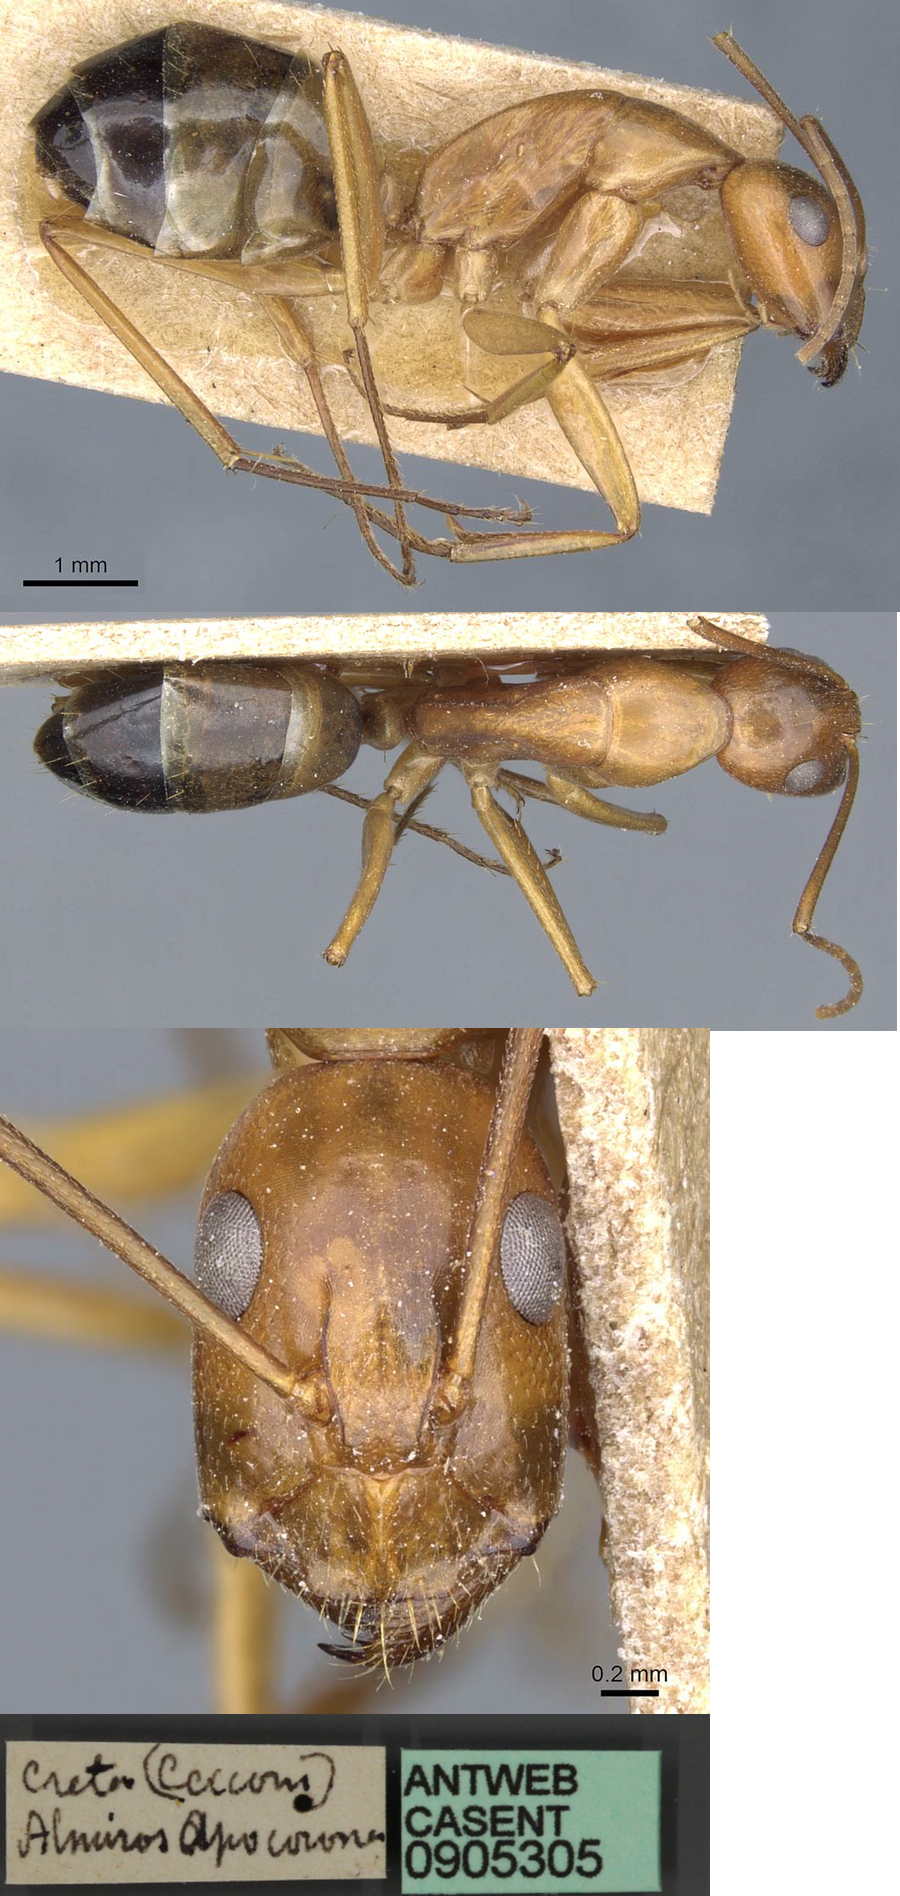 Camponotus baldaccii minor